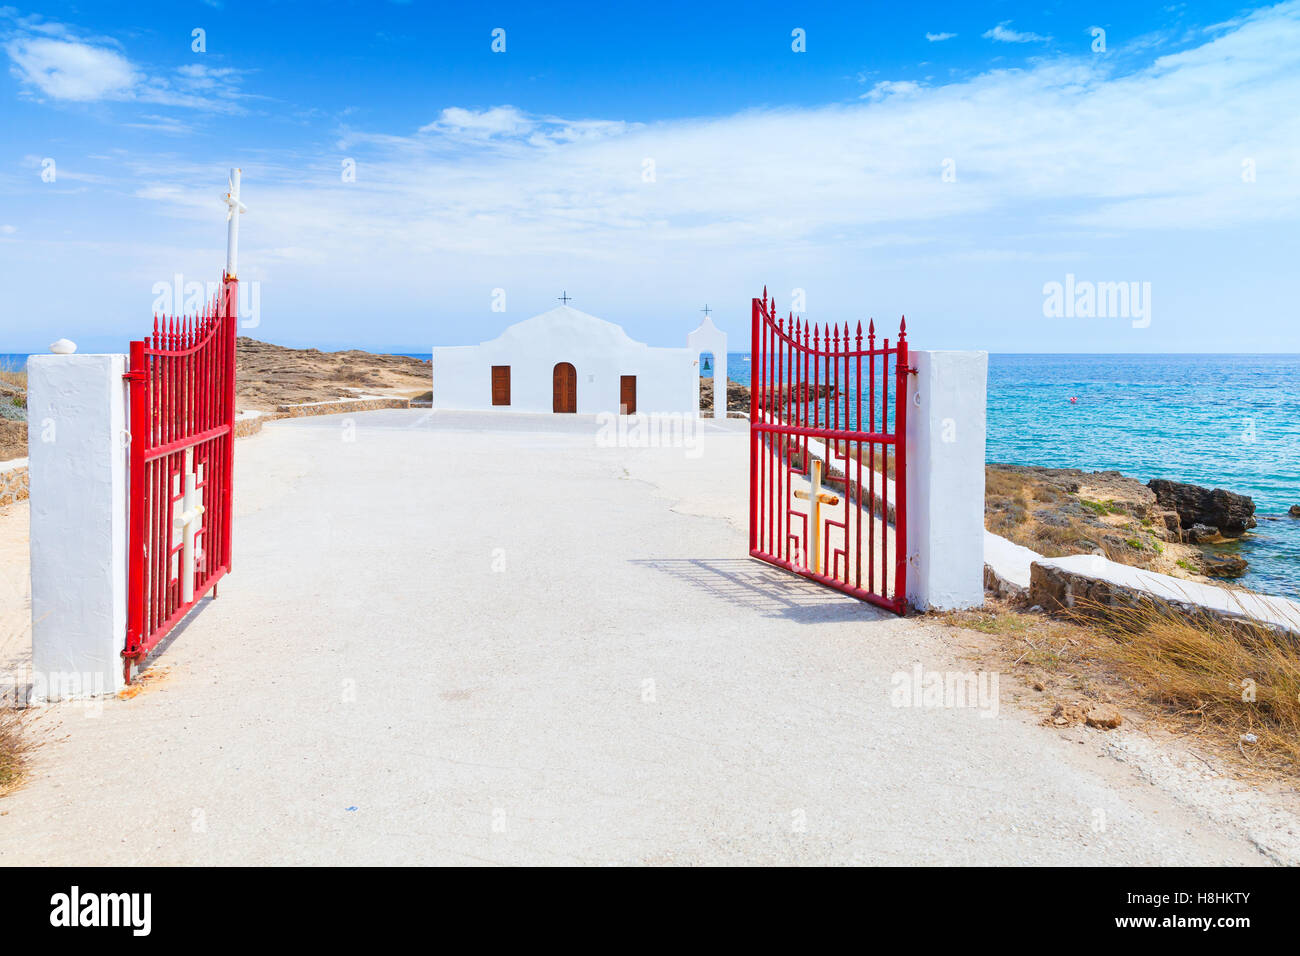 Agios Nikolaos. Ouvrez la porte rouge et blanc église orthodoxe sur la mer. Côte de l'île de Zakynthos, Grèce Banque D'Images